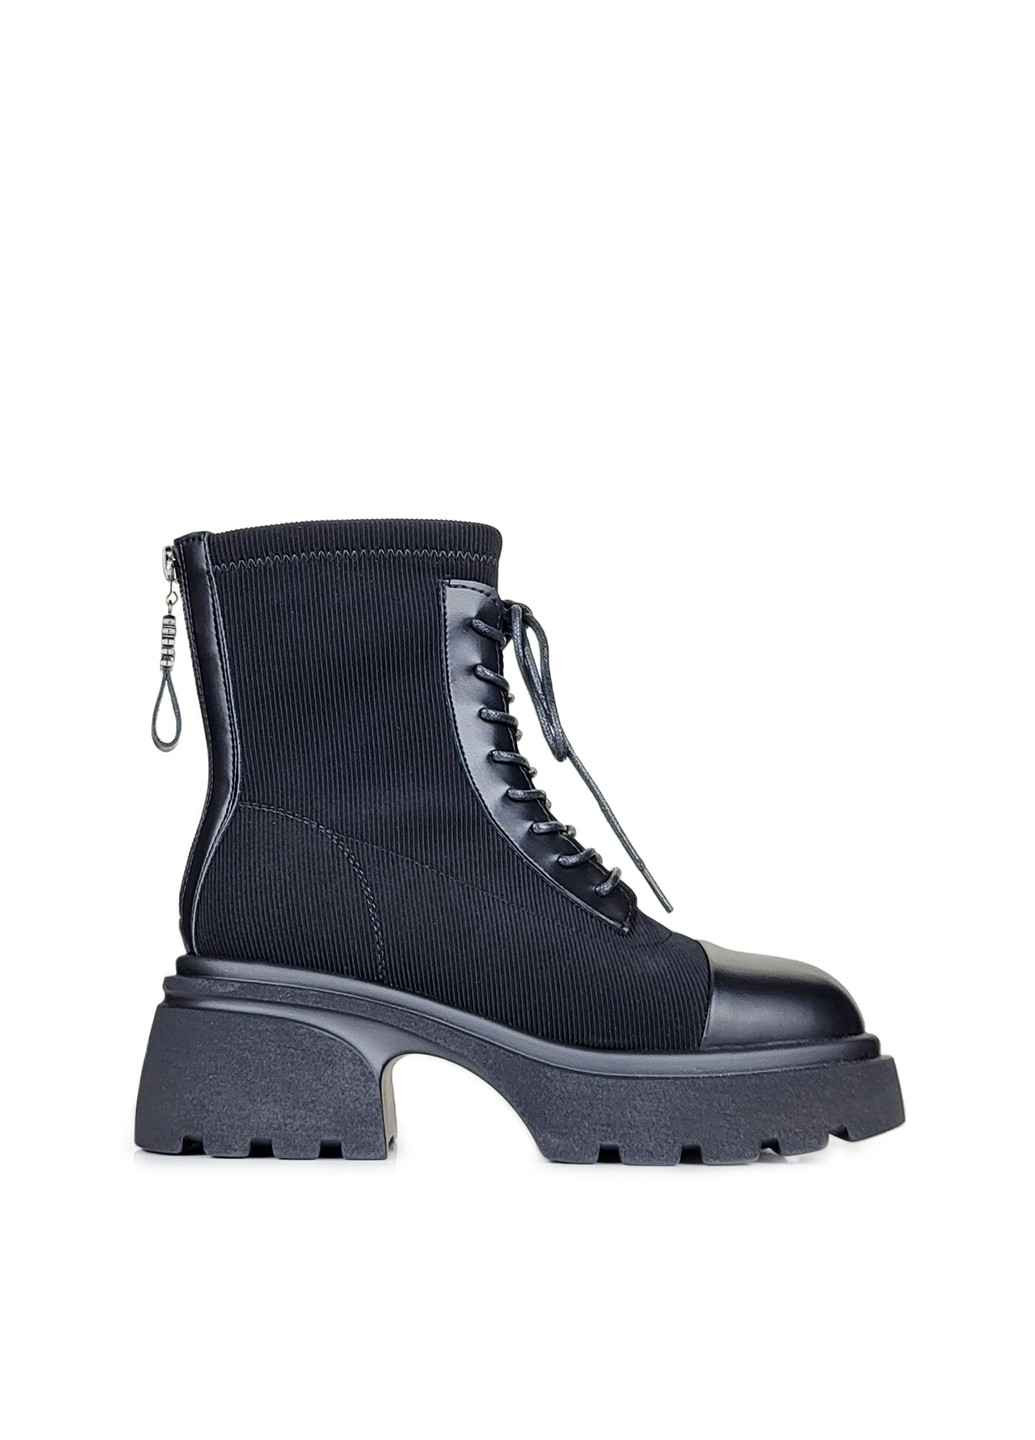 Осенние ботинки женские на платформе черные демисезон,, yg88-605c черный, 36 Fashion из искусственной кожи